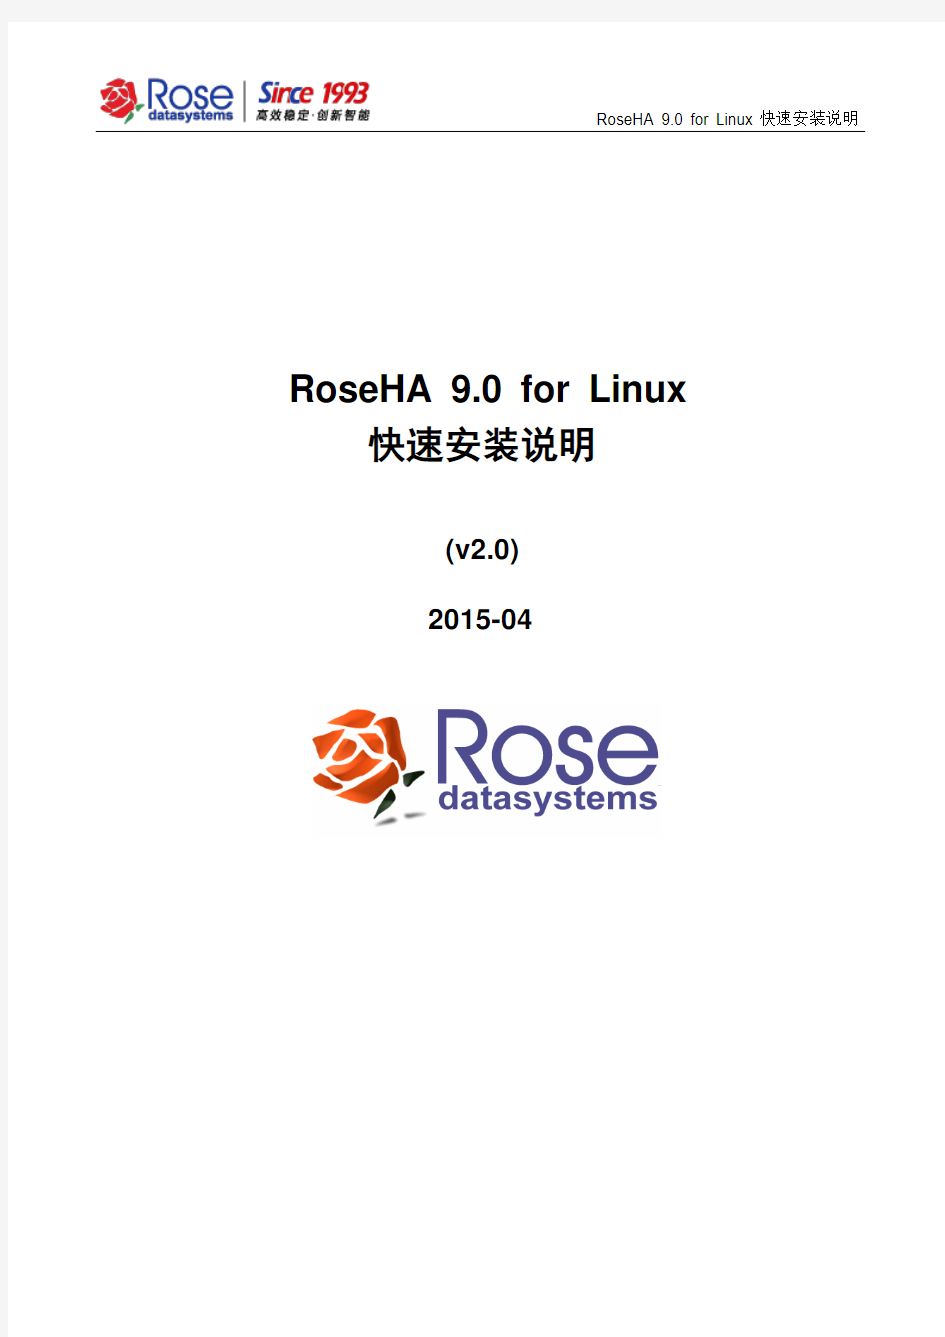 RoseHA 9.0 for Linux快速安装说明_v2.0-2015-04